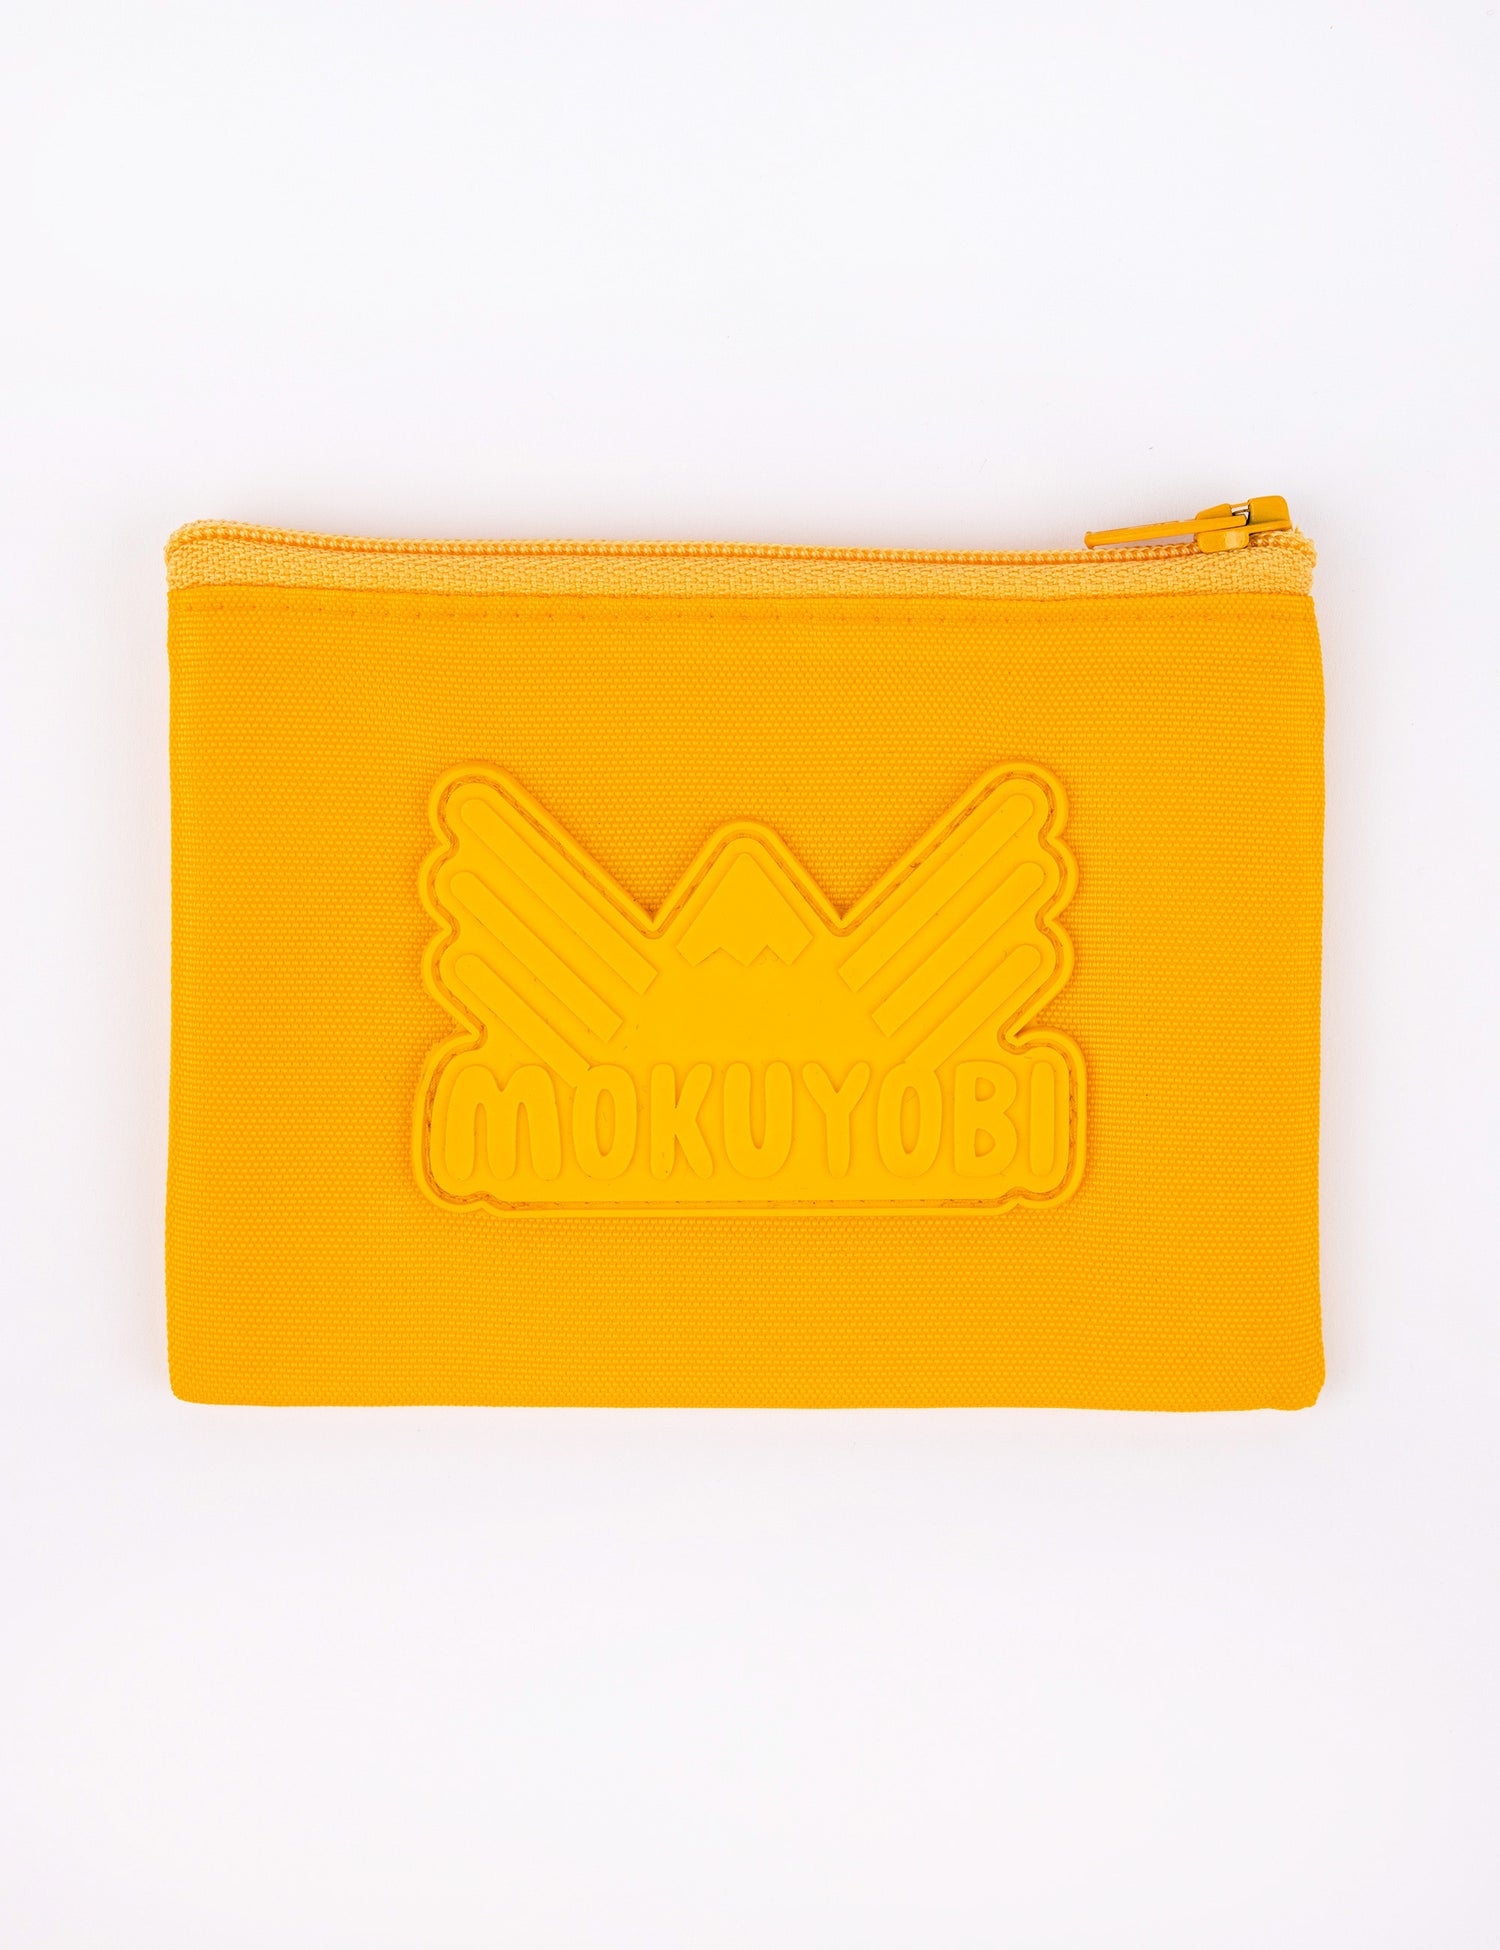 Small coin pouch with Mokuyobi logo in Saffron yellow